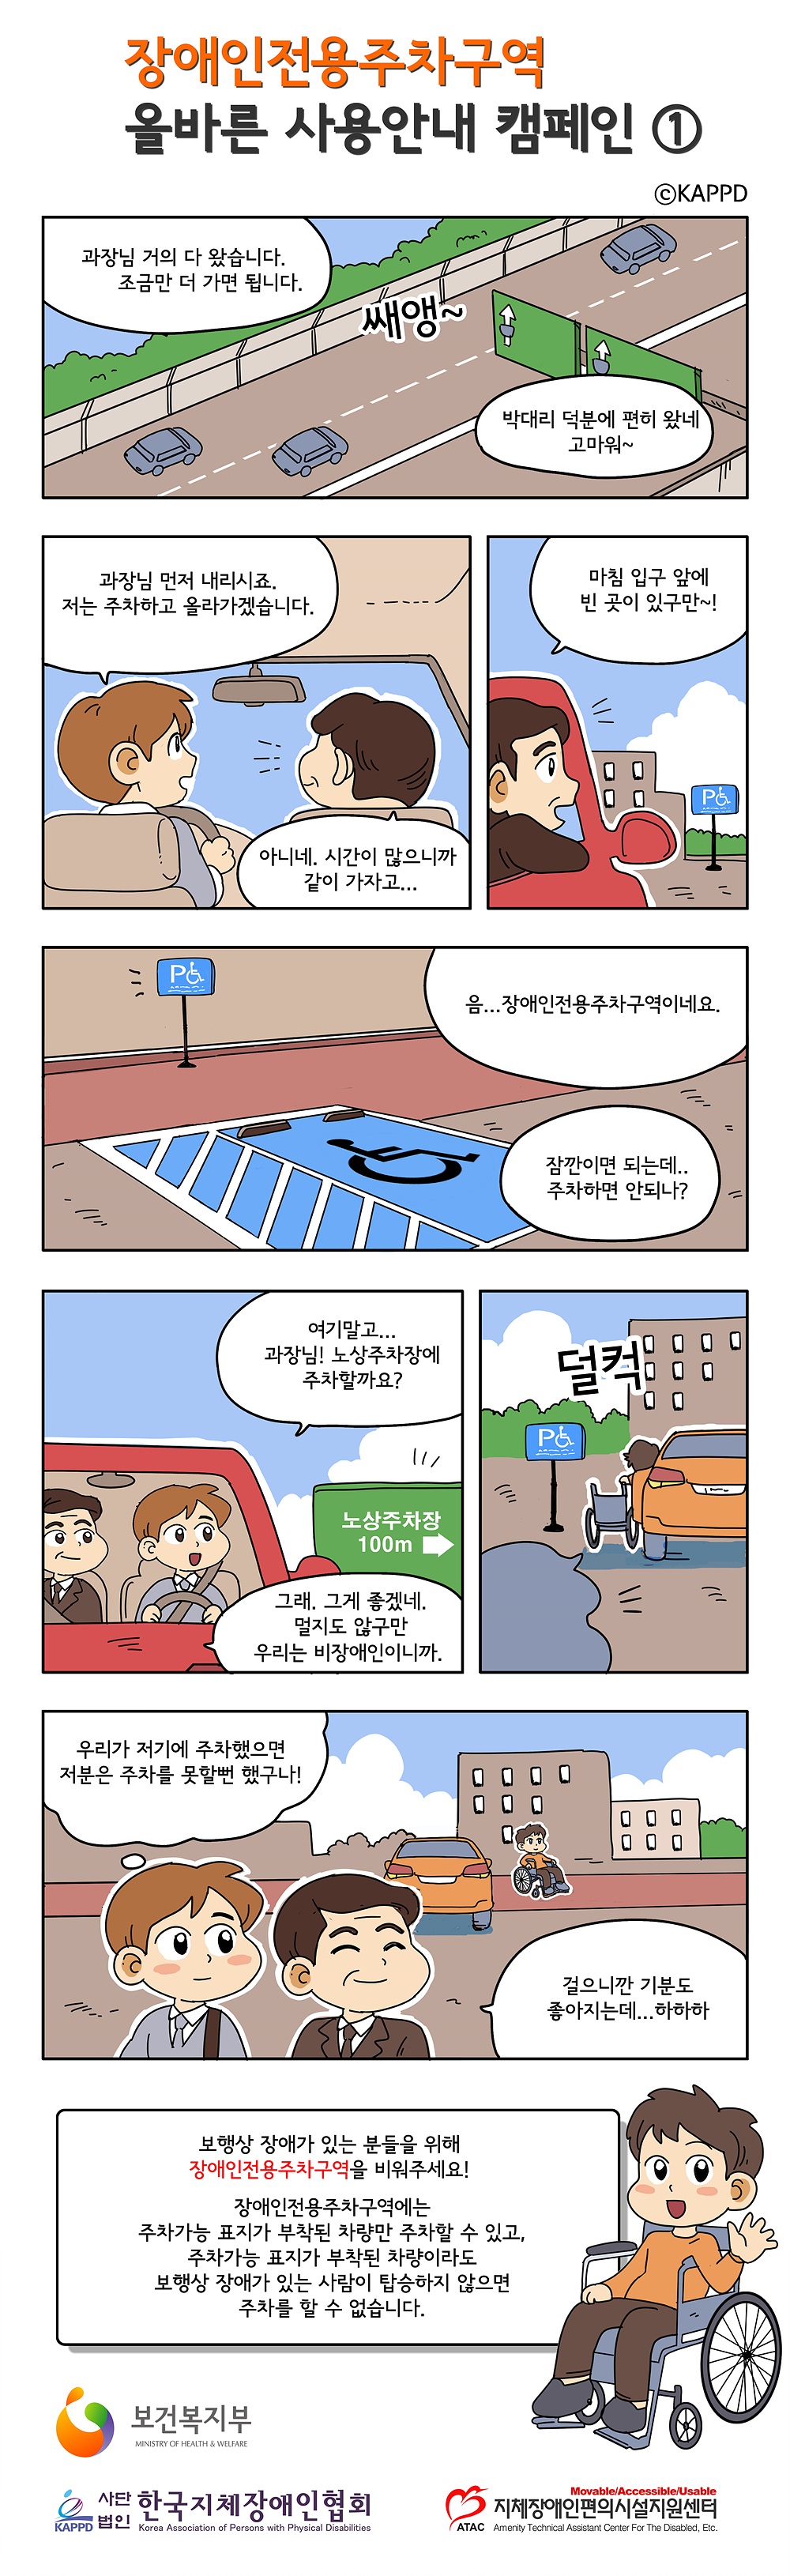 사본 -장애인주차구역 홍보 카툰1.jpg